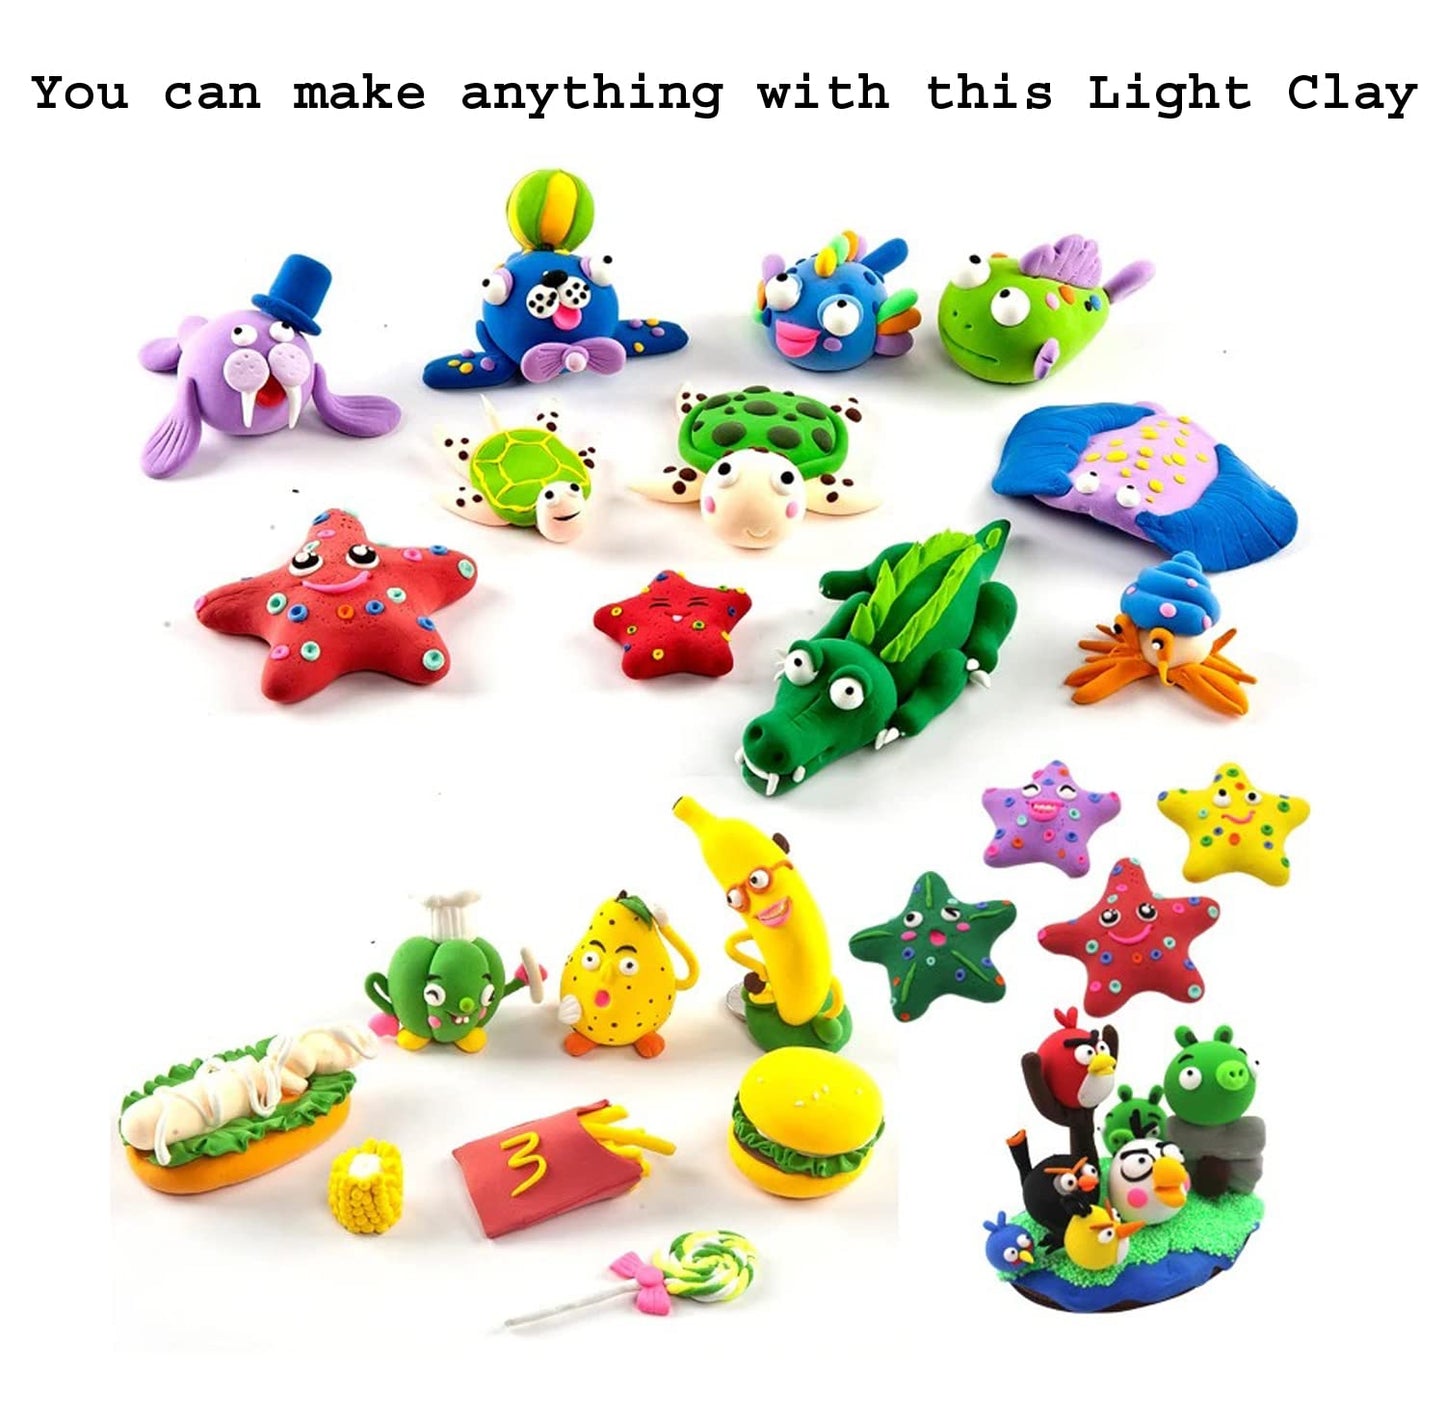 Super Clay - Foam Clay - 1 pack